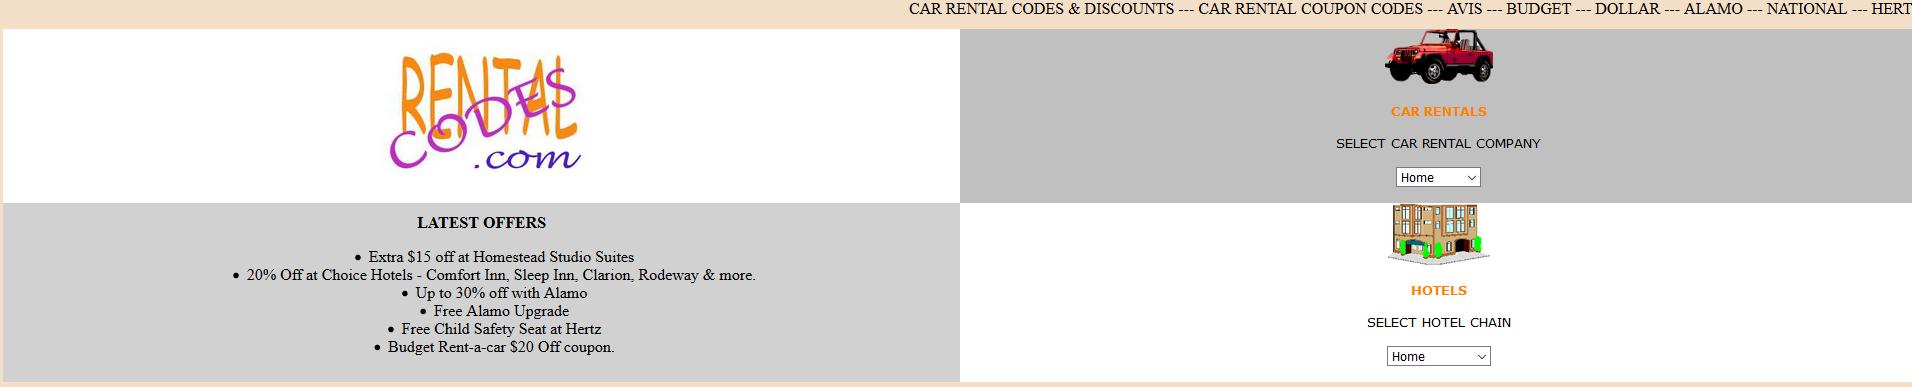 2003 Rentalcodes Homepage